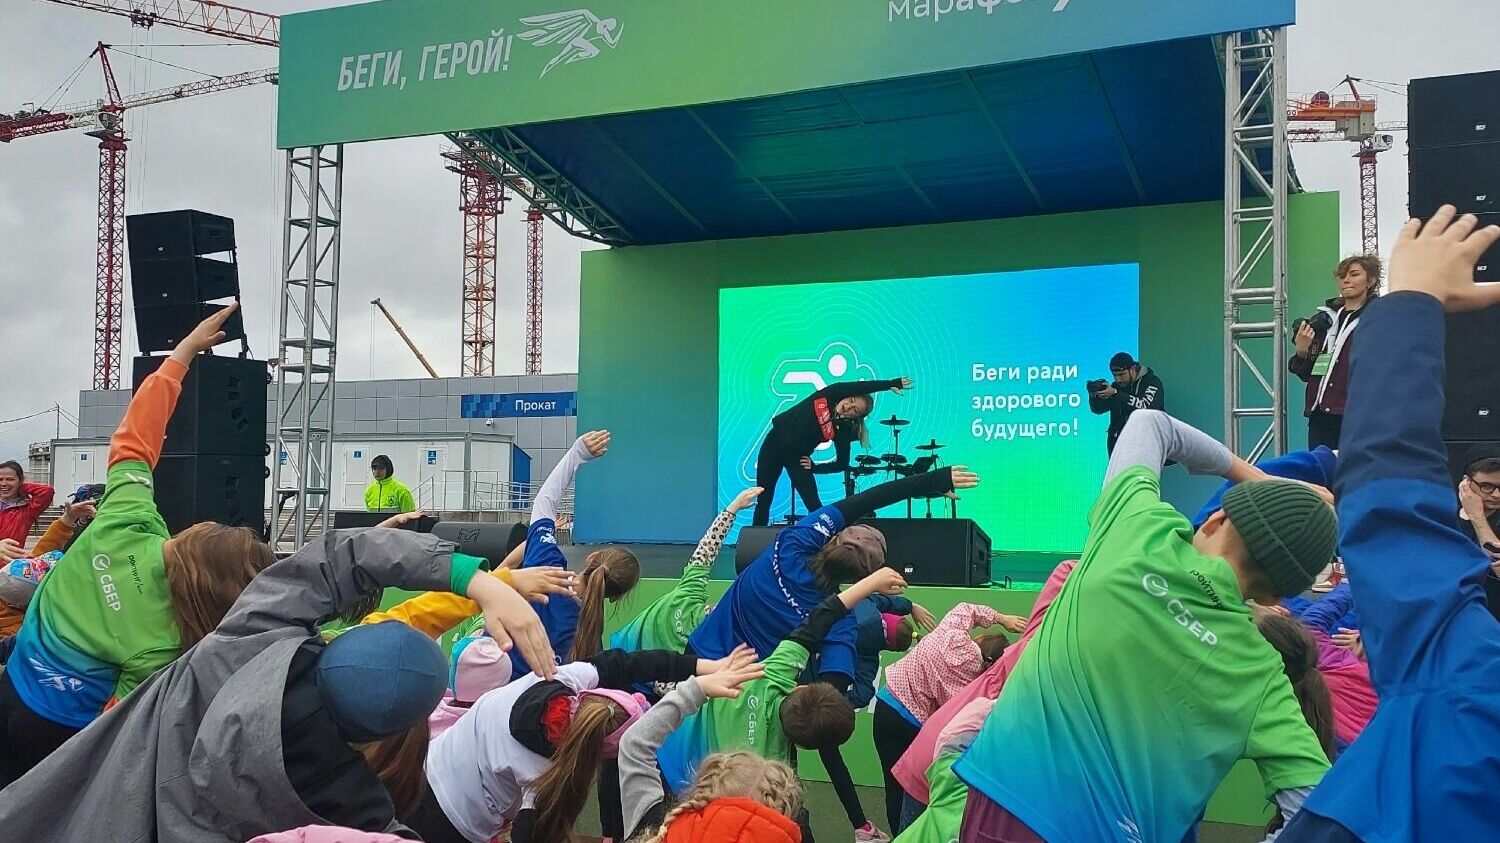 Зеленый марафон в Нижнем Новгороде, разминка